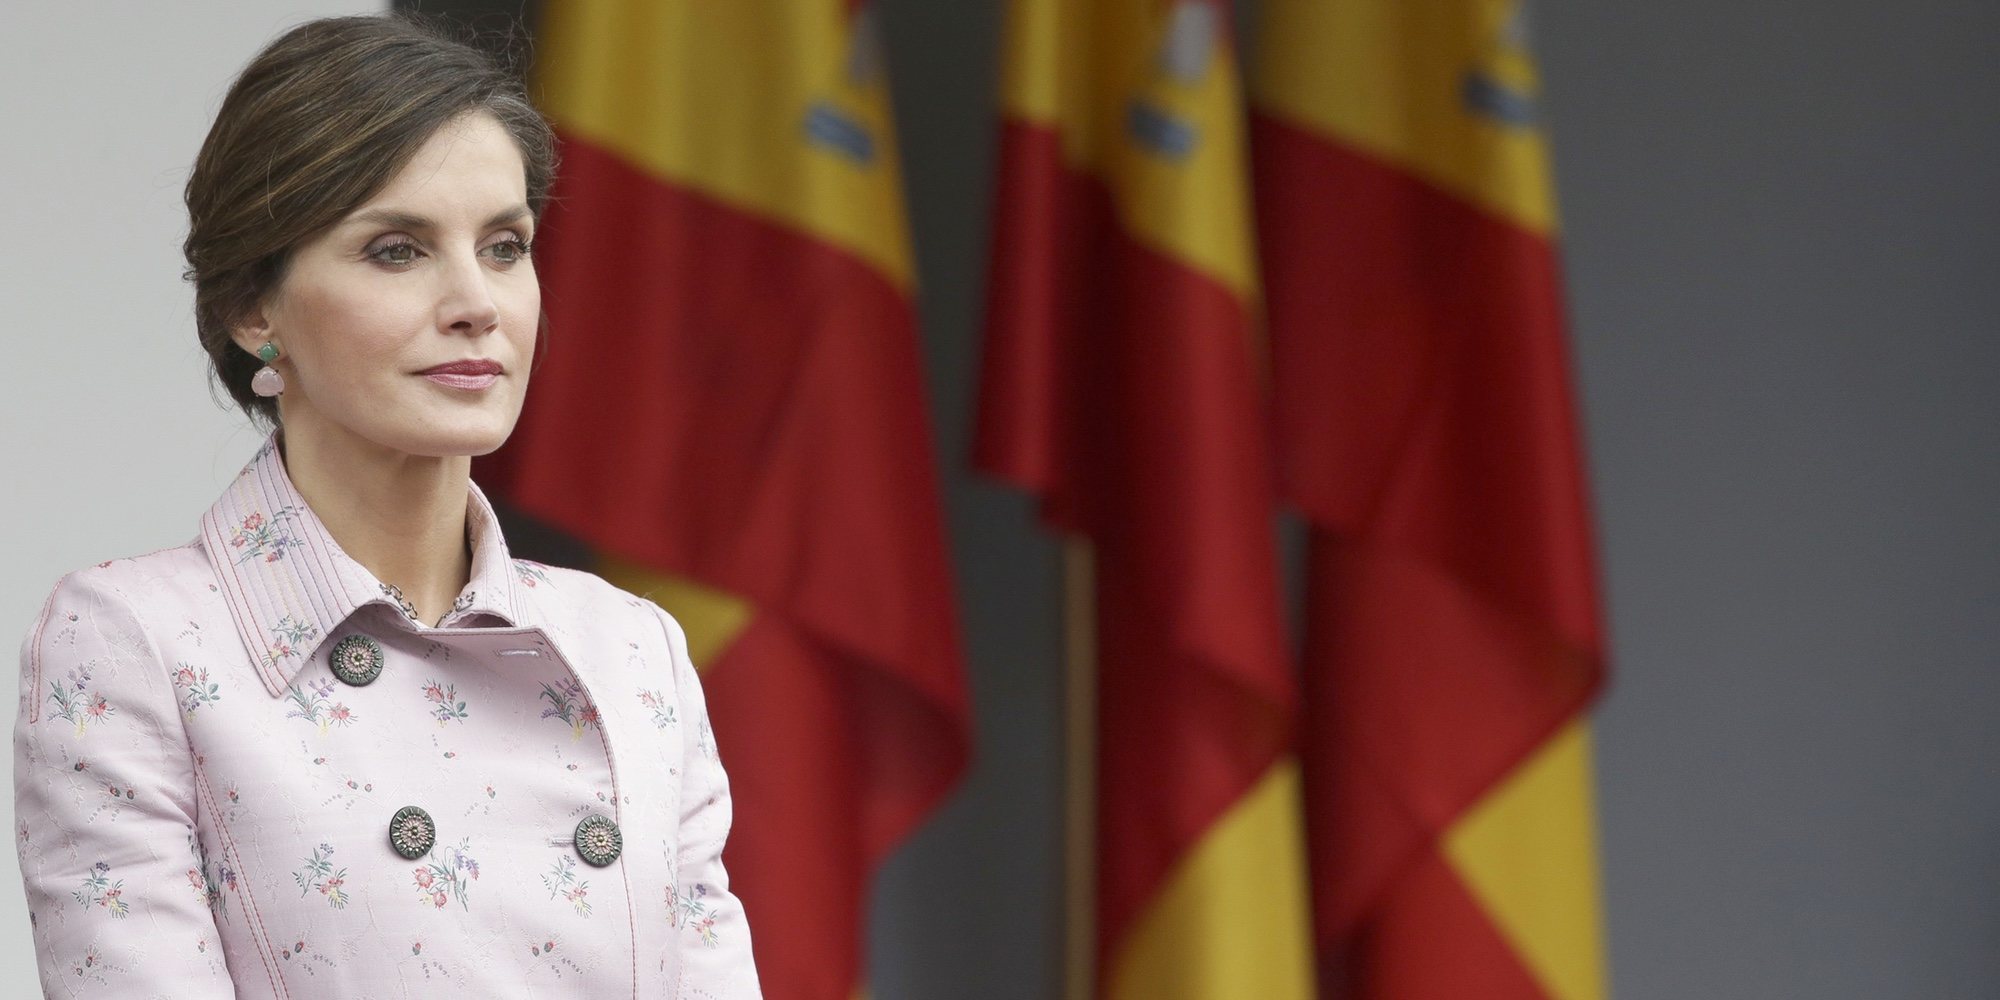 La razón por la que la Reina Letizia ha vuelto a romper la tradición al faltar a la toma de posesión de Pedro Sánchez